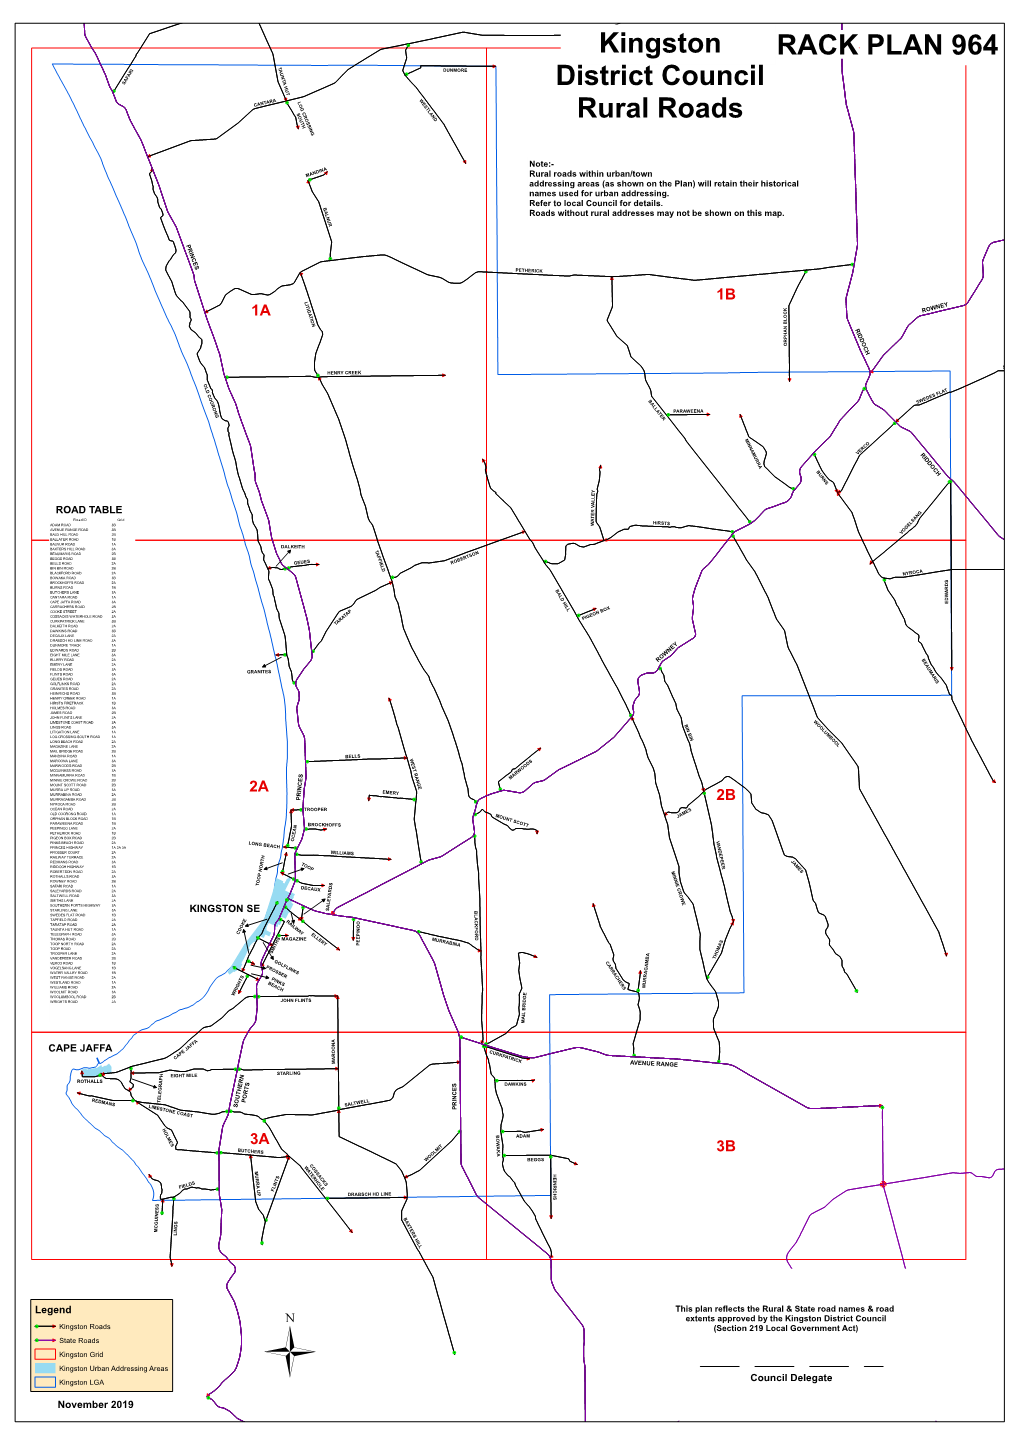 Kingston District Council Rural Roads Rack Plan